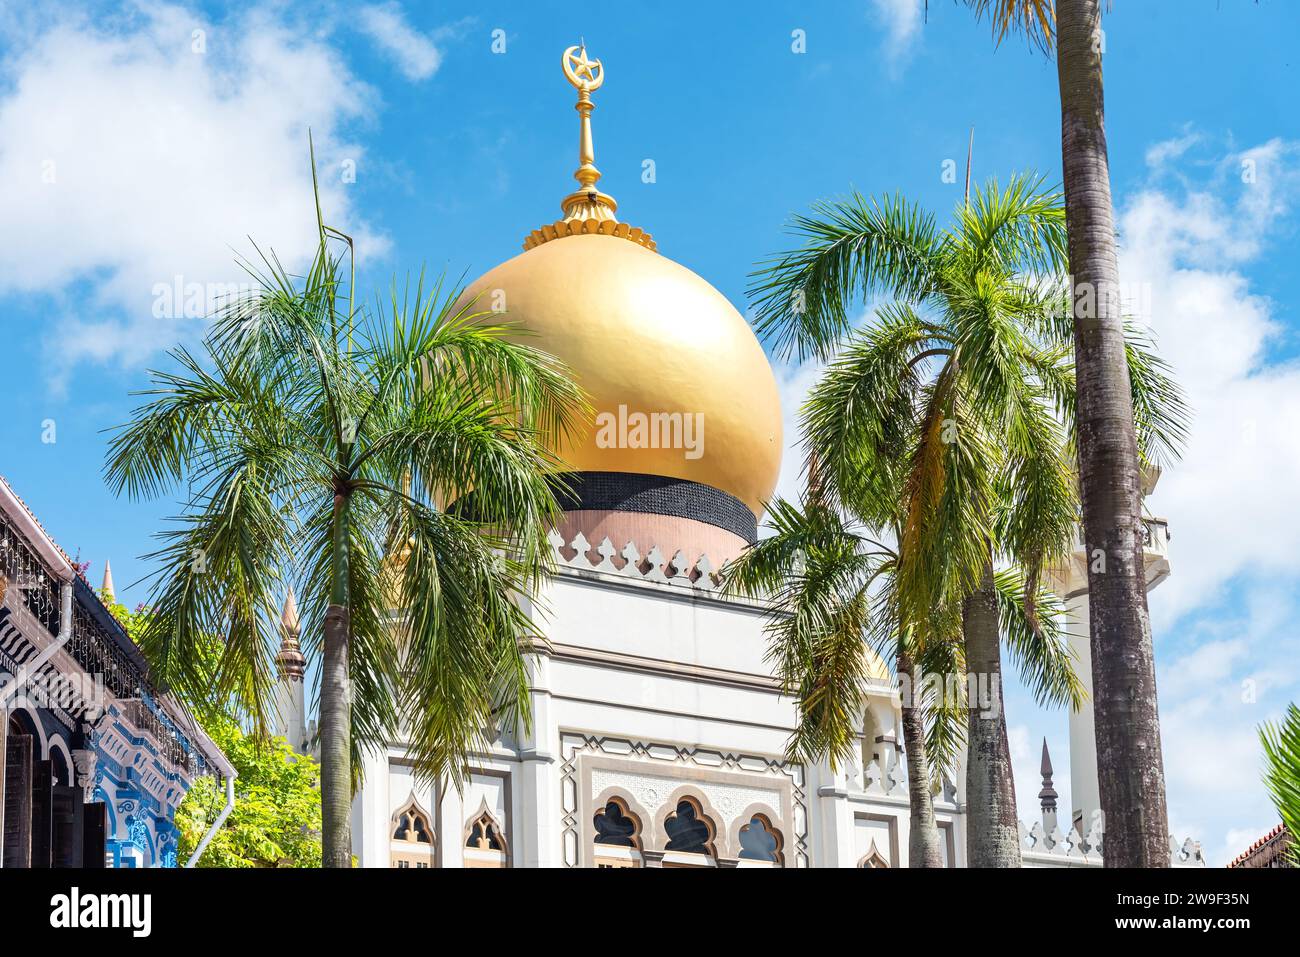 La squisita Moschea del Sultano con un tetto giallo luminoso e lussureggianti palme in primo piano Foto Stock